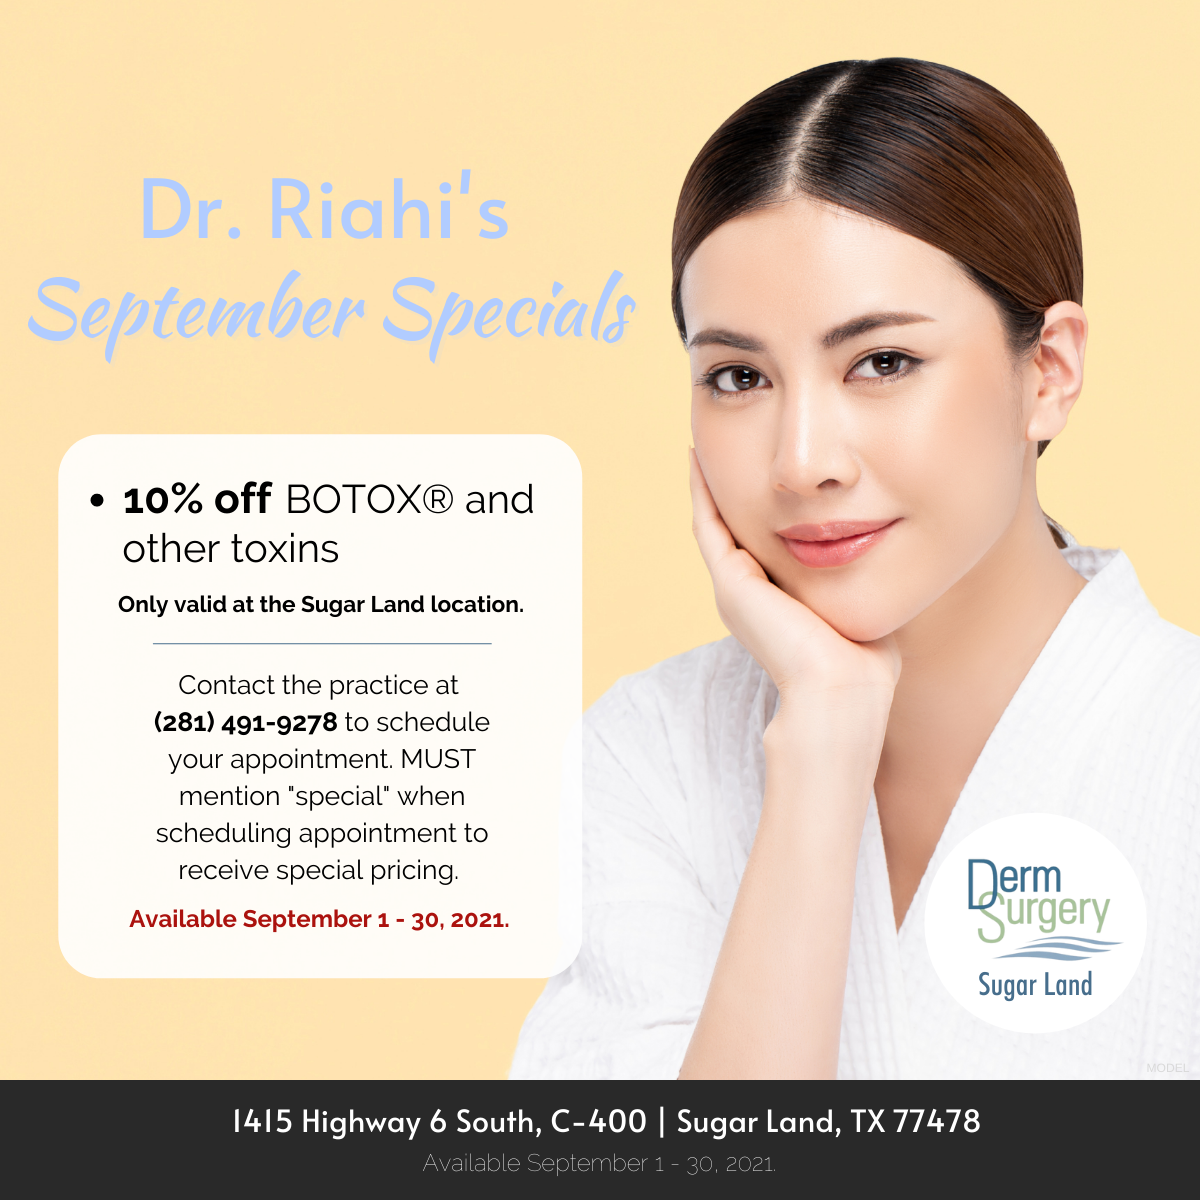 Dr. Riahi's September Specials